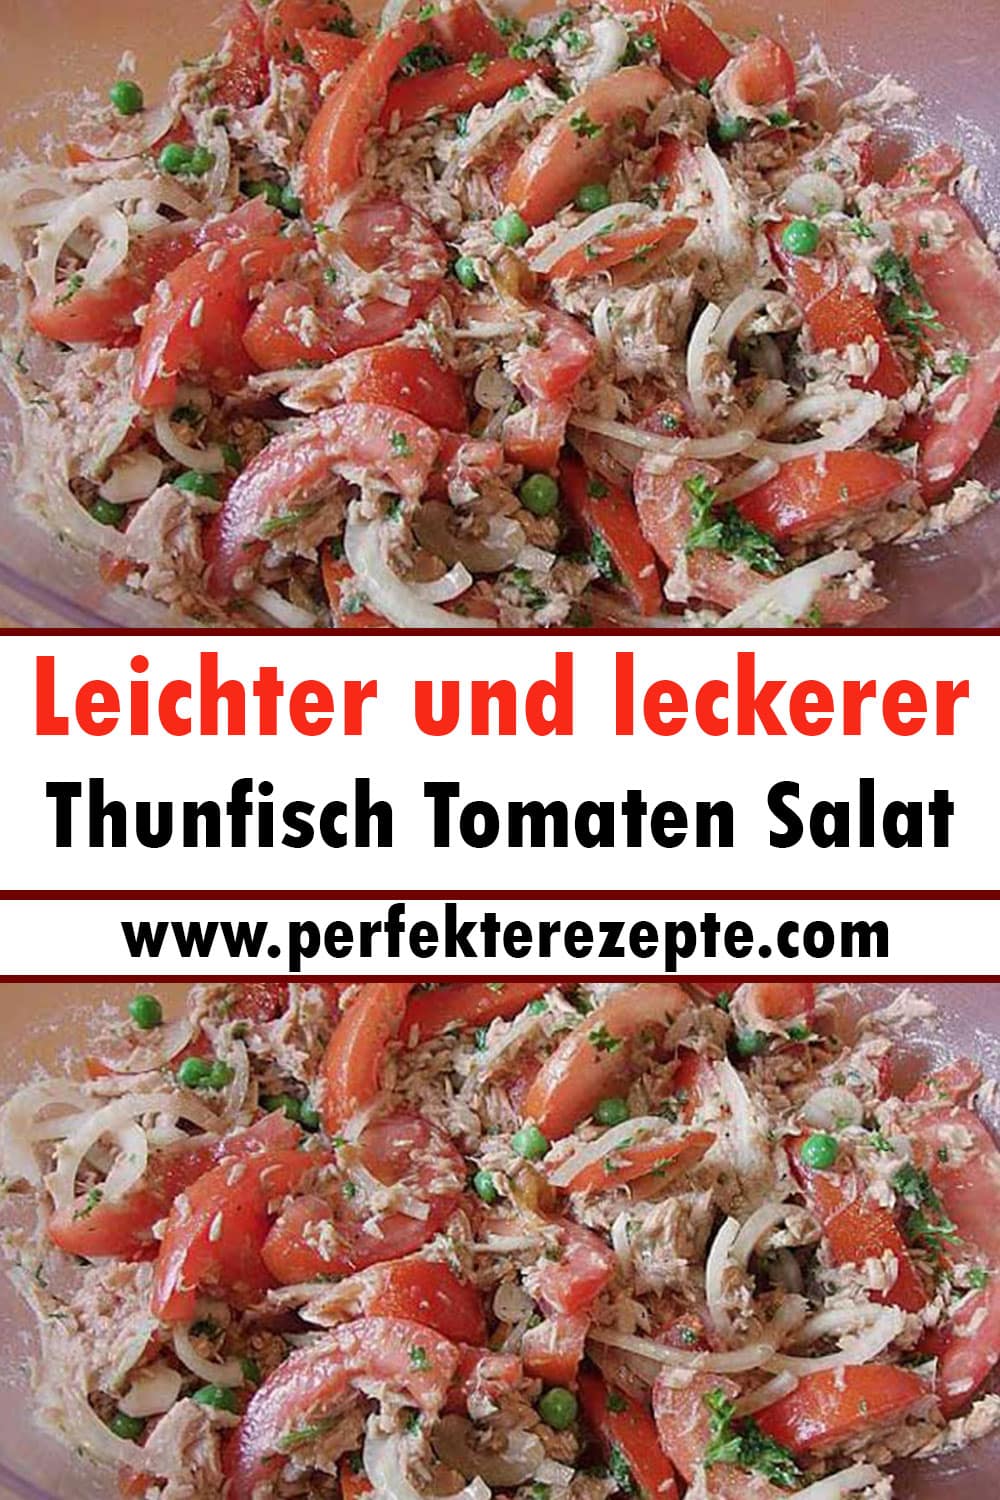 Leichter und leckerer Thunfisch Tomaten Salat Rezept